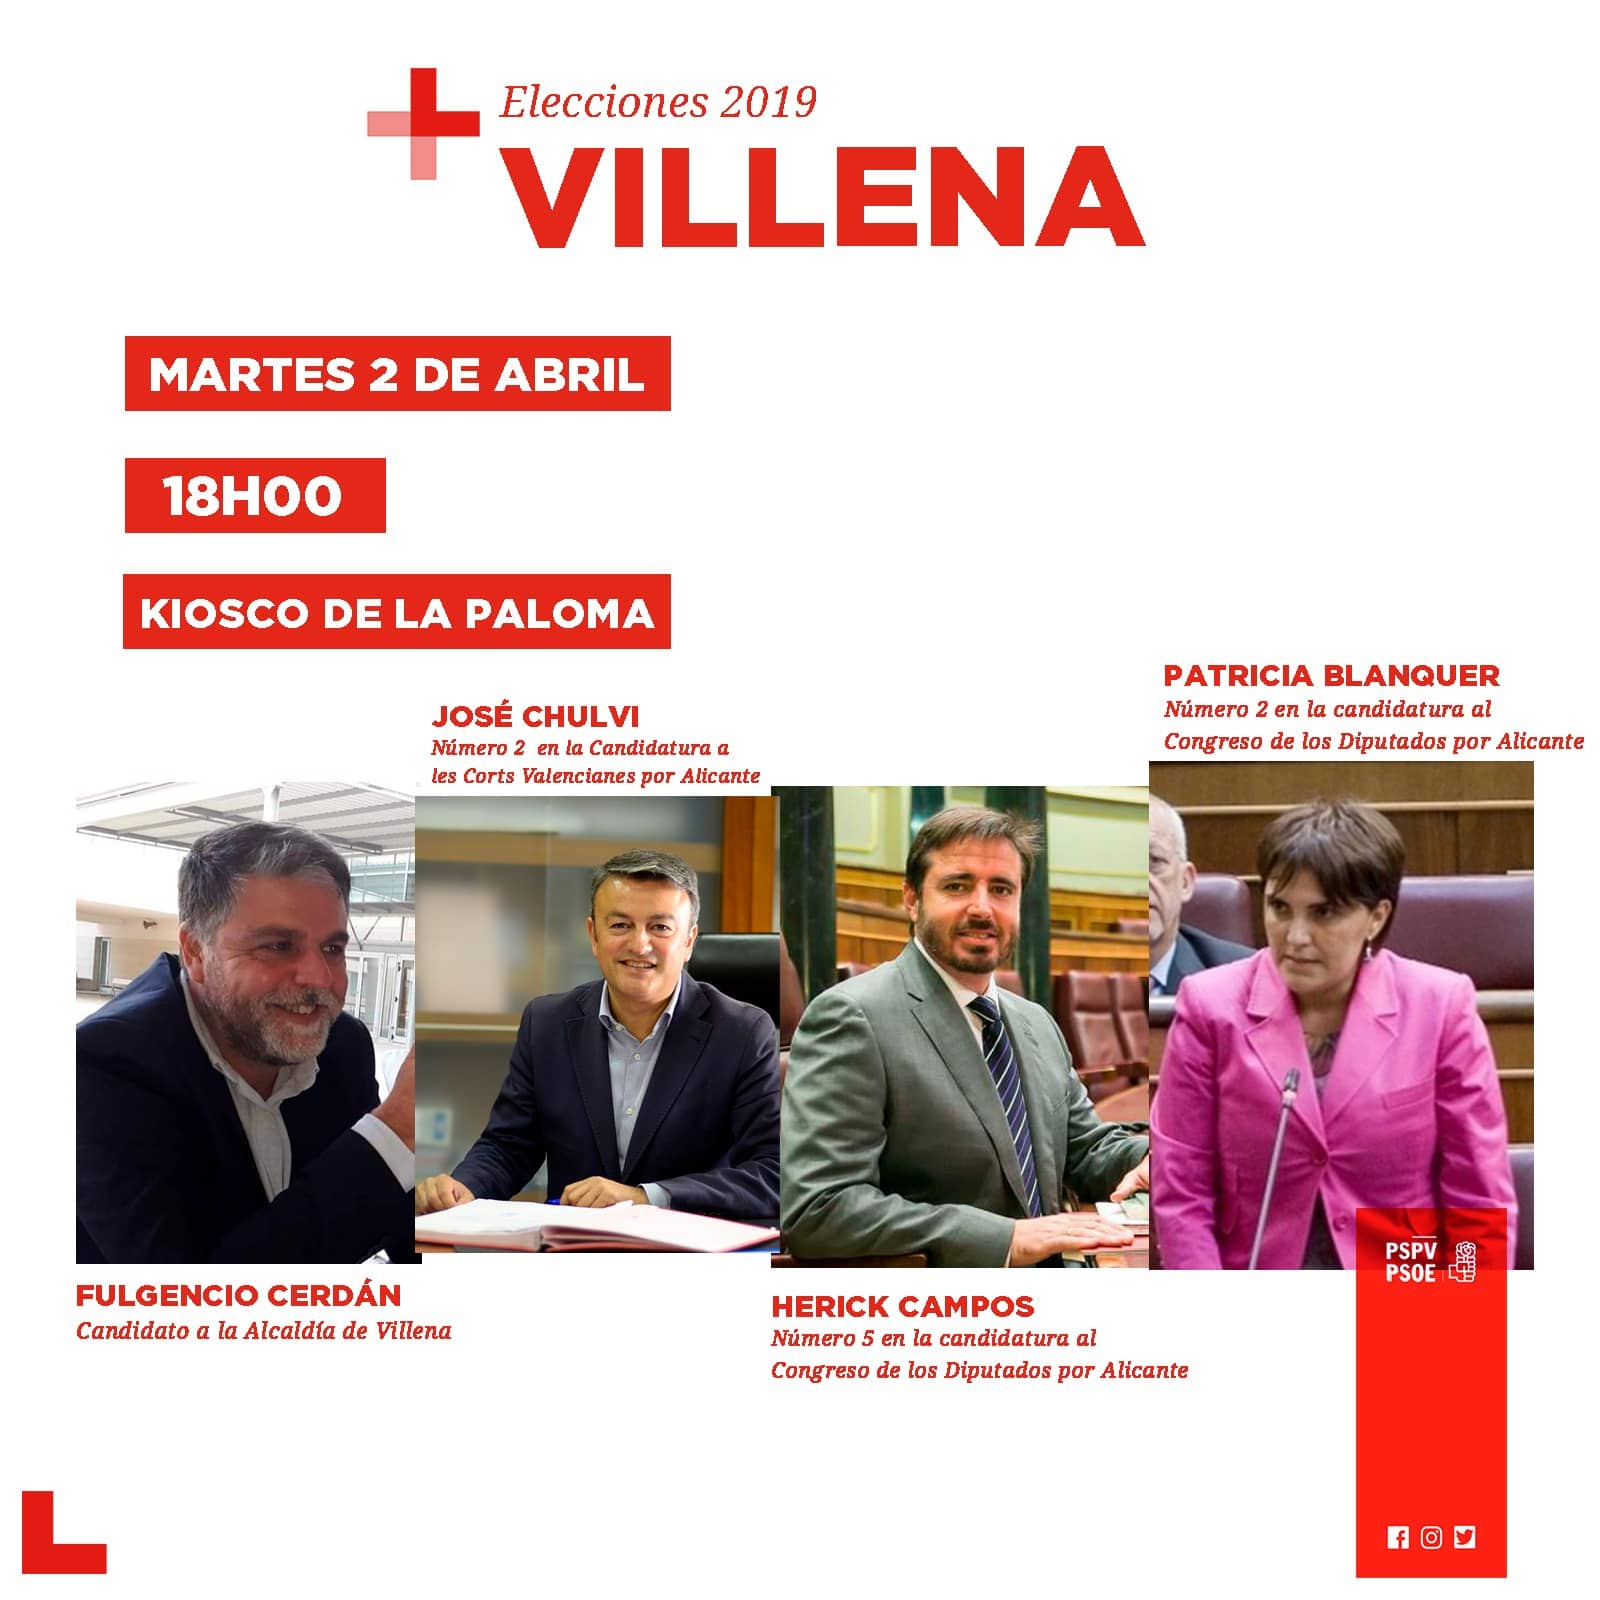 El martes visitan Villena los diputados socialistas Patricia Blanquer y Herick Campos